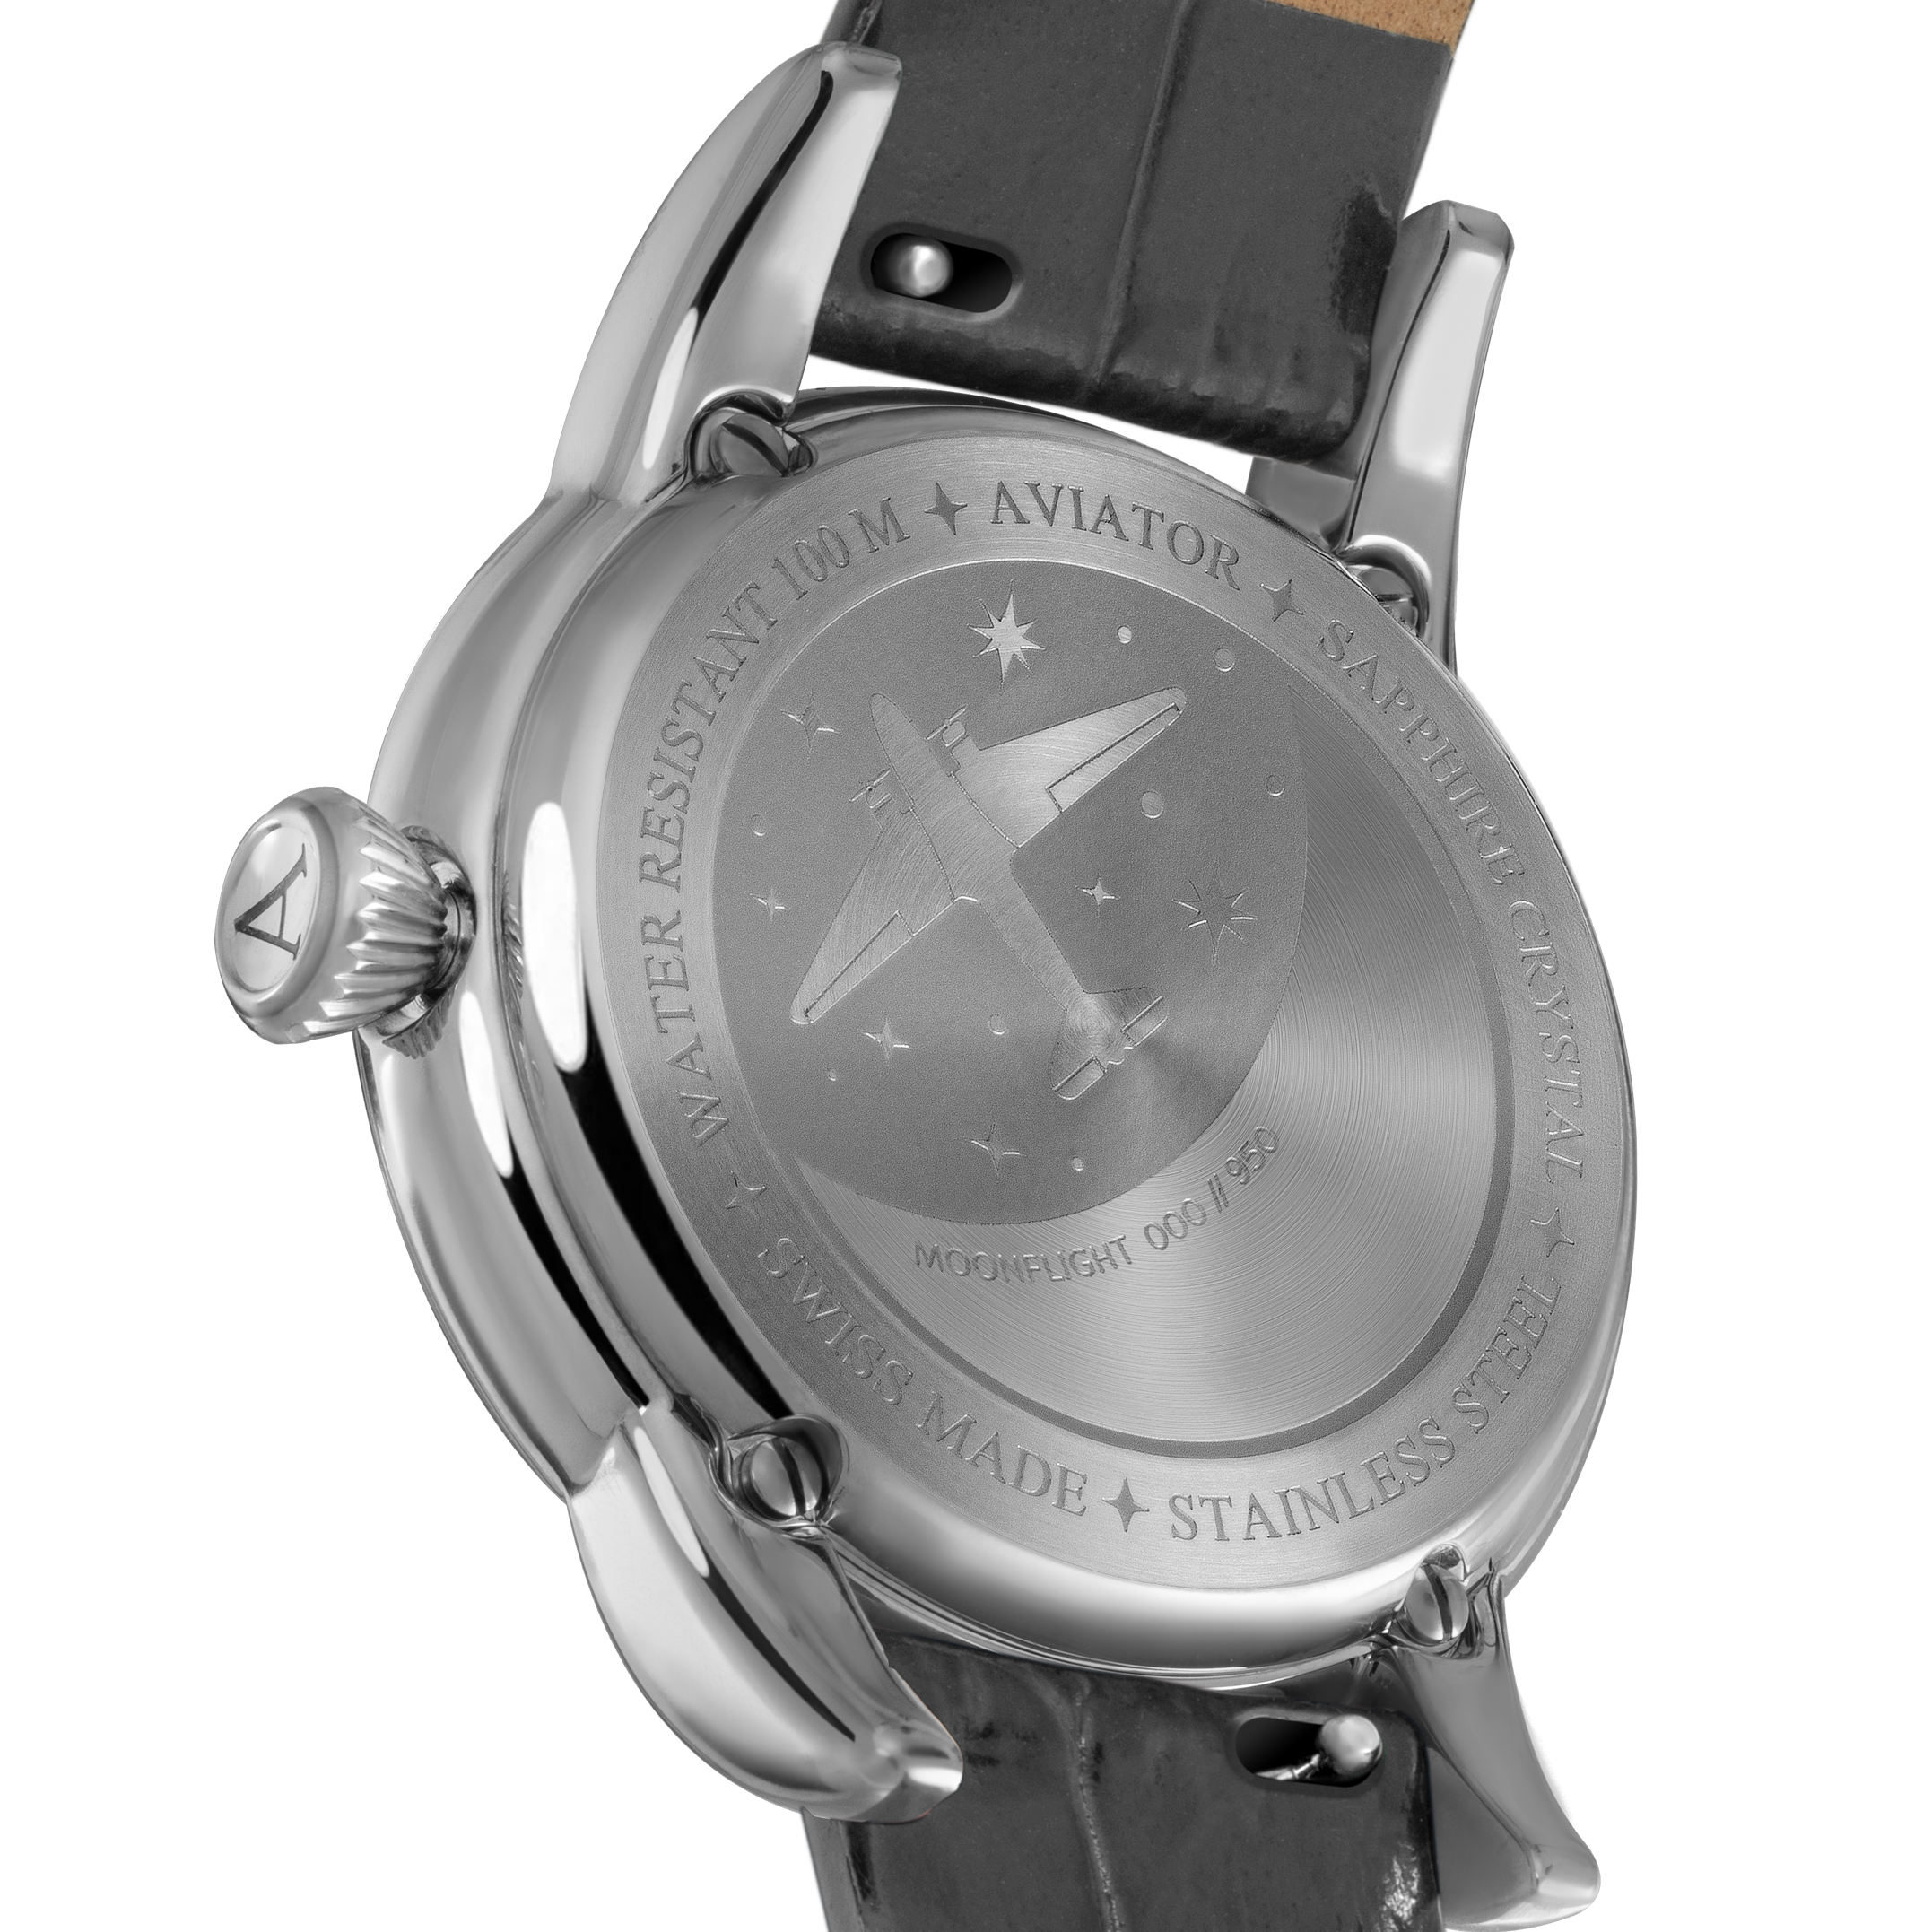 DOUGLAS MOONFLIGHT 月相顯示時尚腕錶